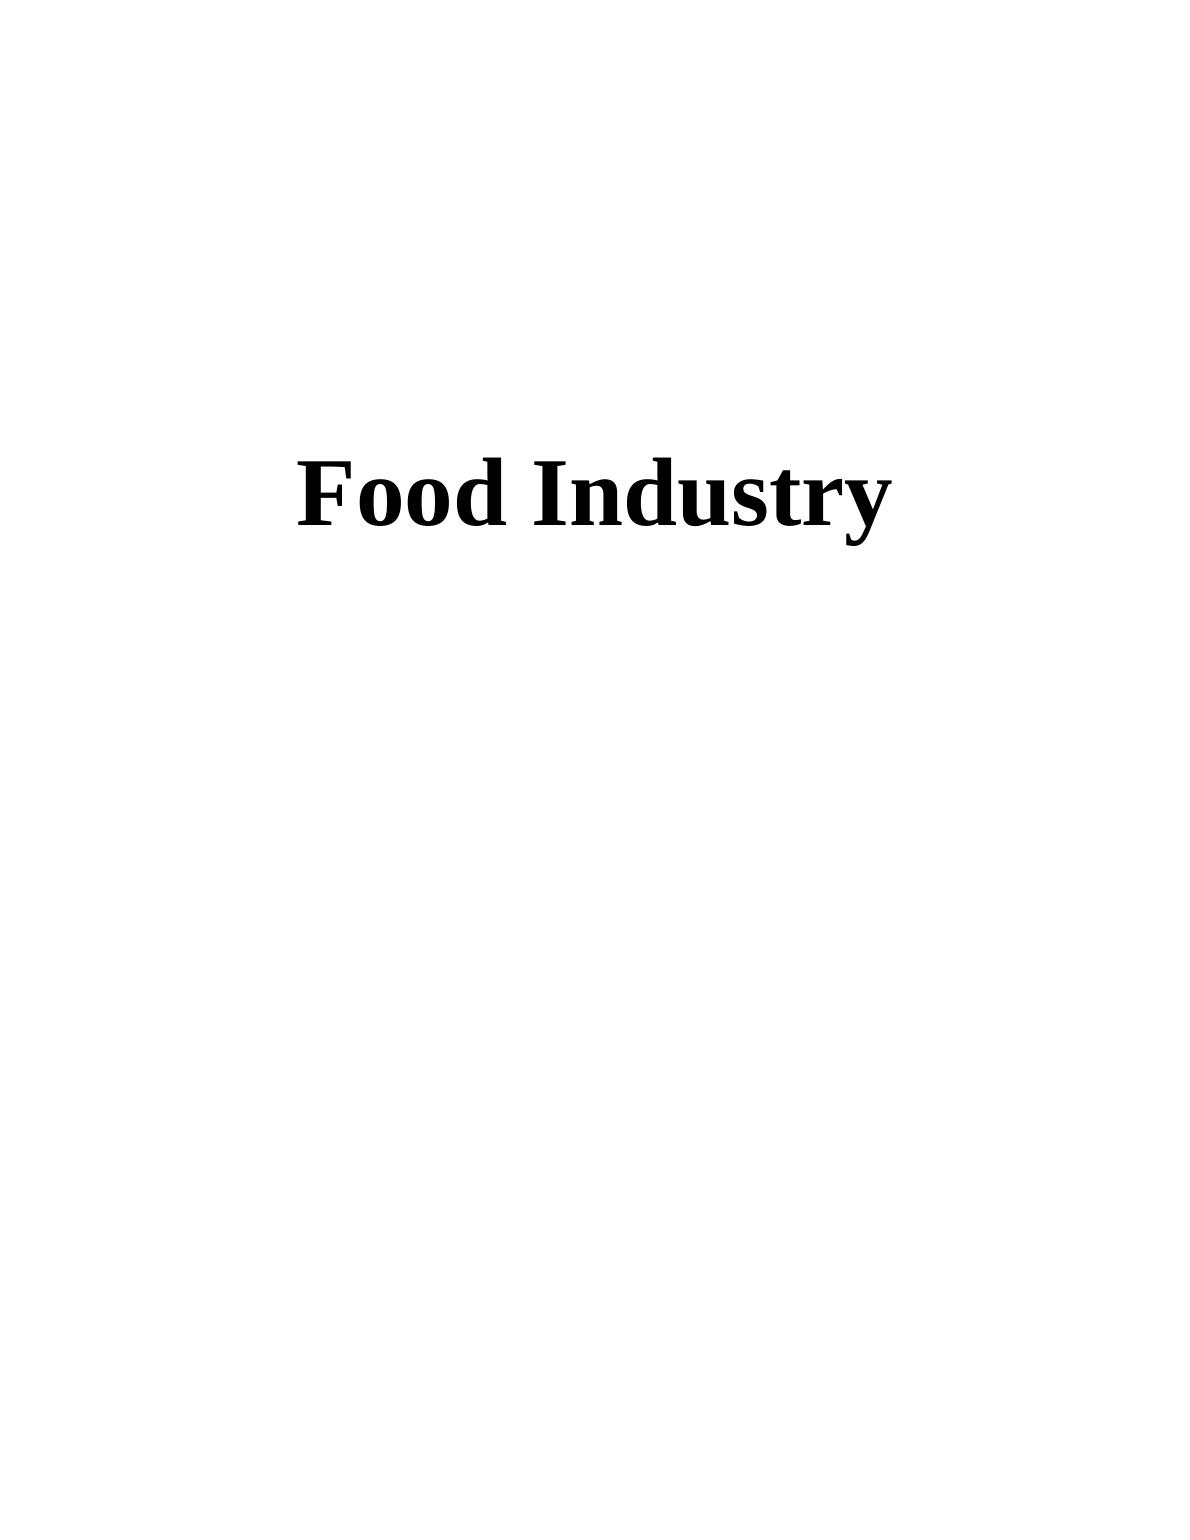 Food Industry - Co-op Food_1